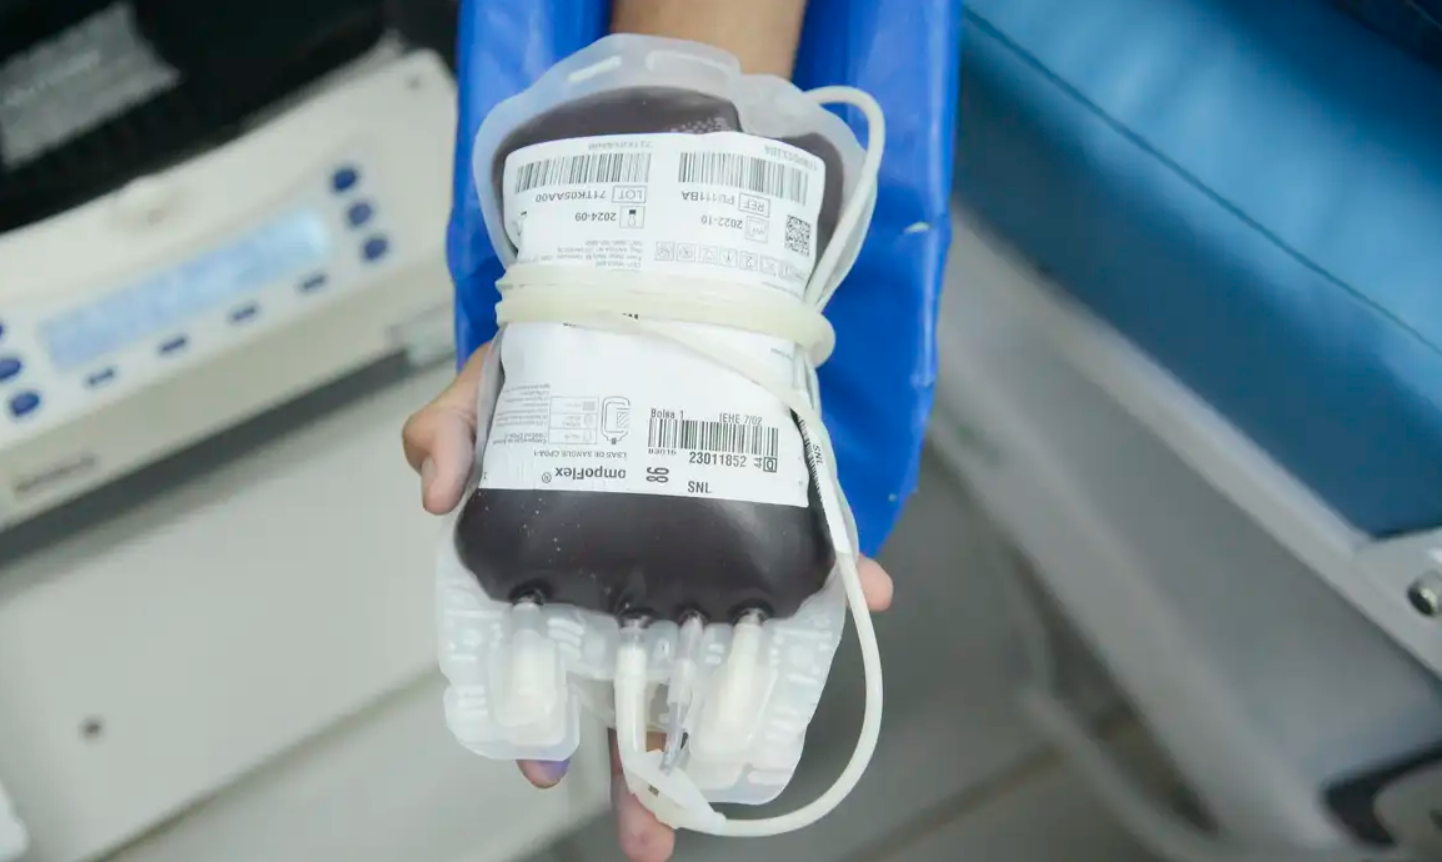 Novo app vai facilitar a doação de sangue em hemocentros do país